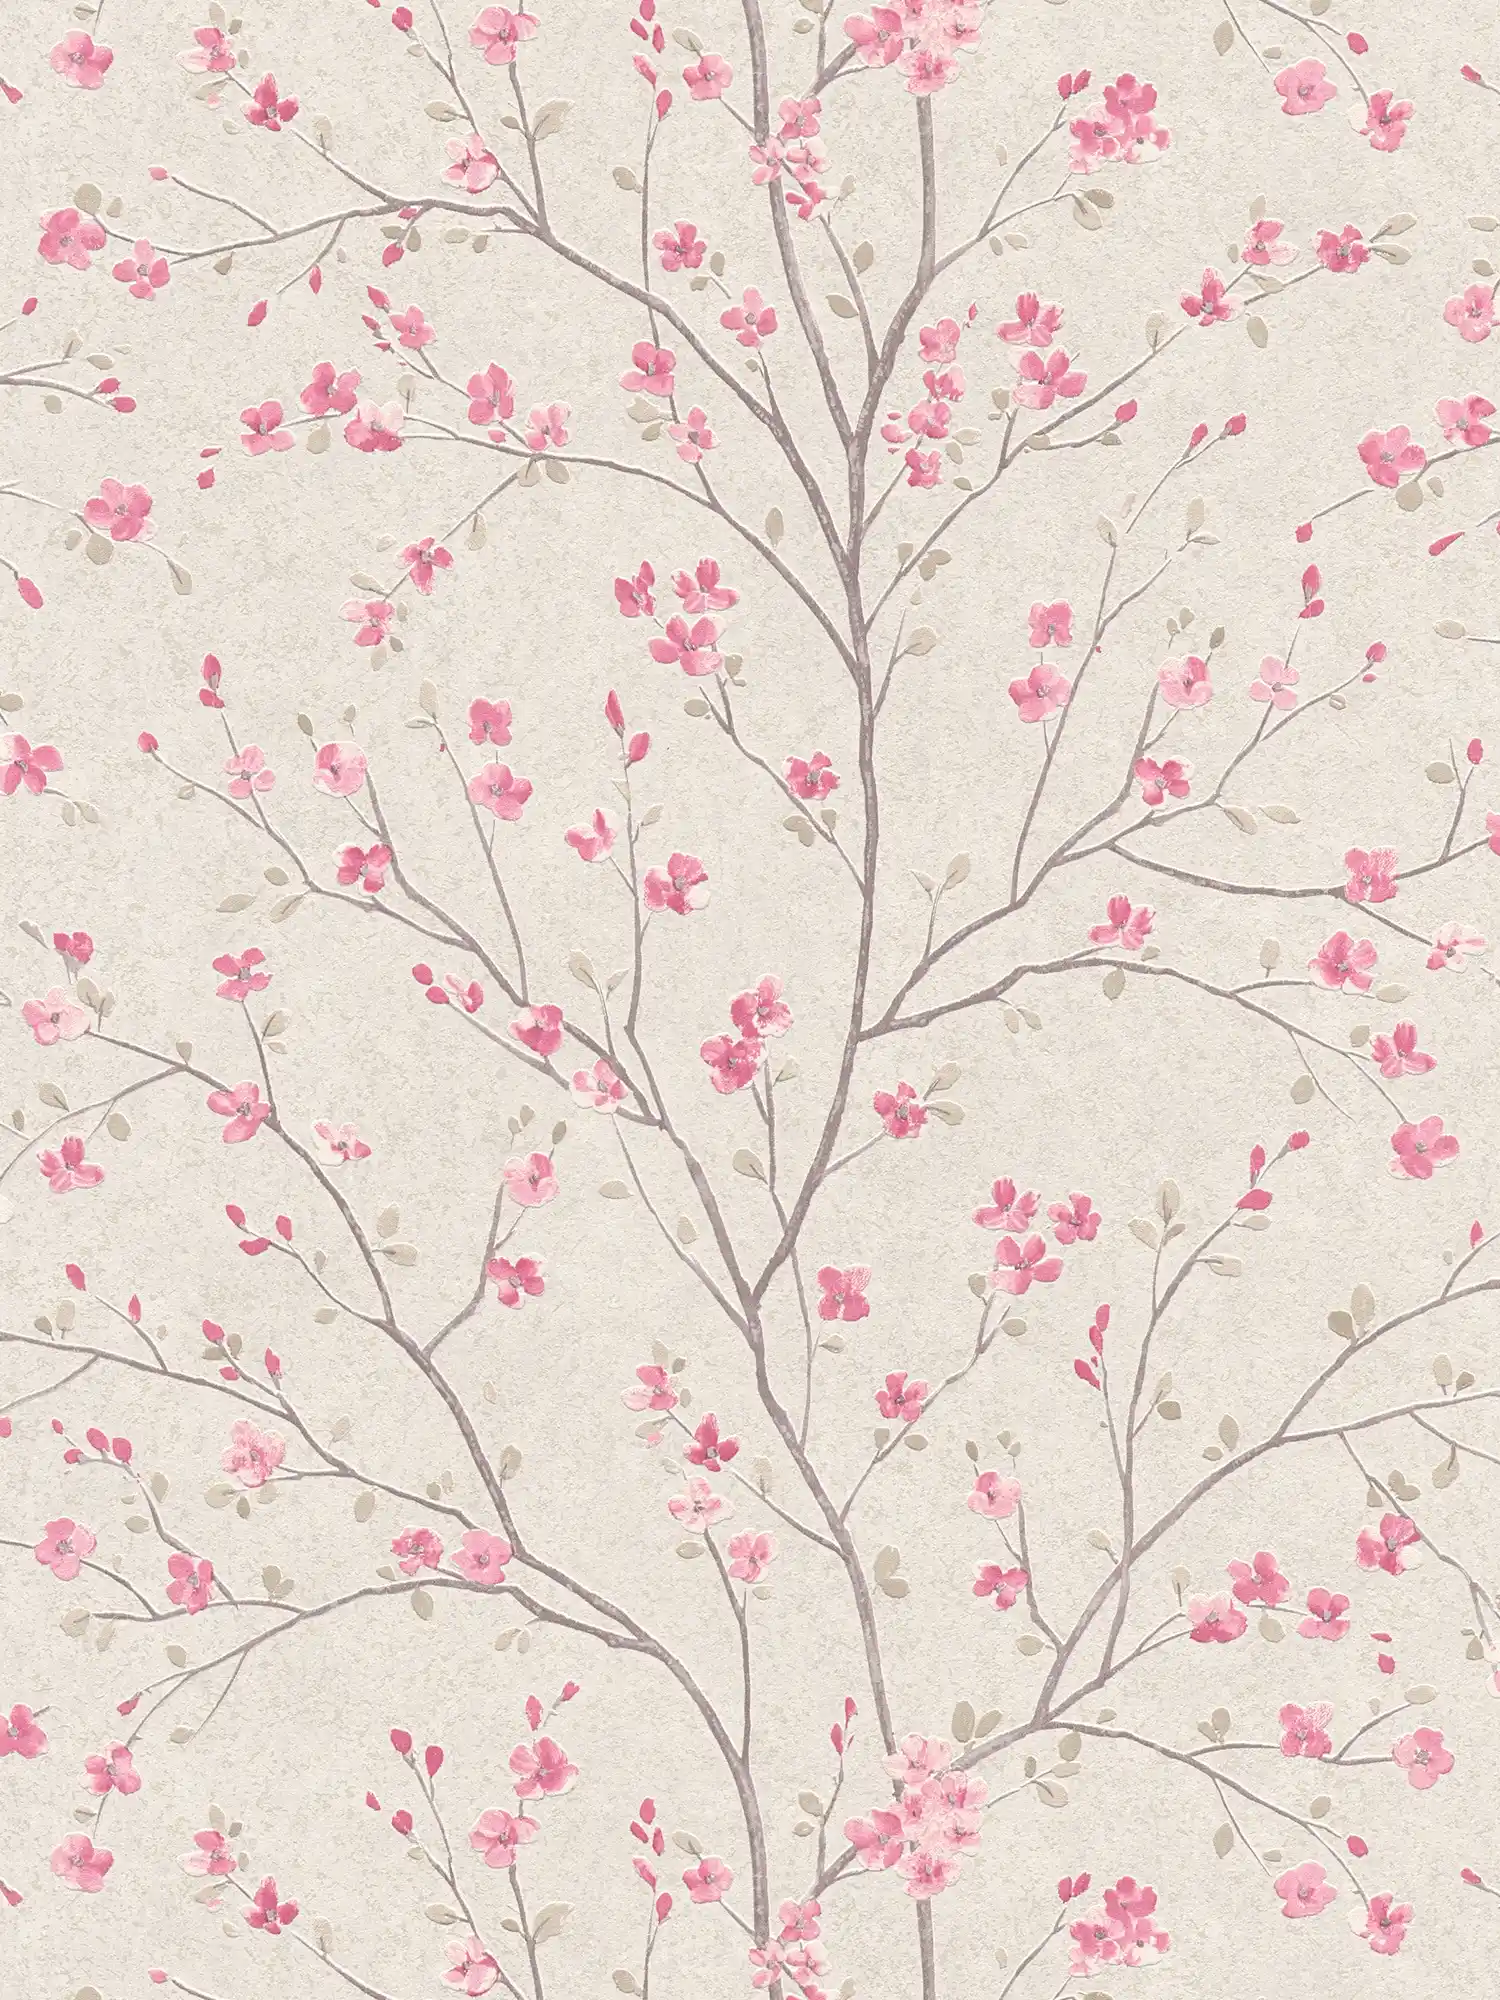 Vliesbehang met kersenbloesemmotief in Aziatische stijl - bruin, roze, wit
